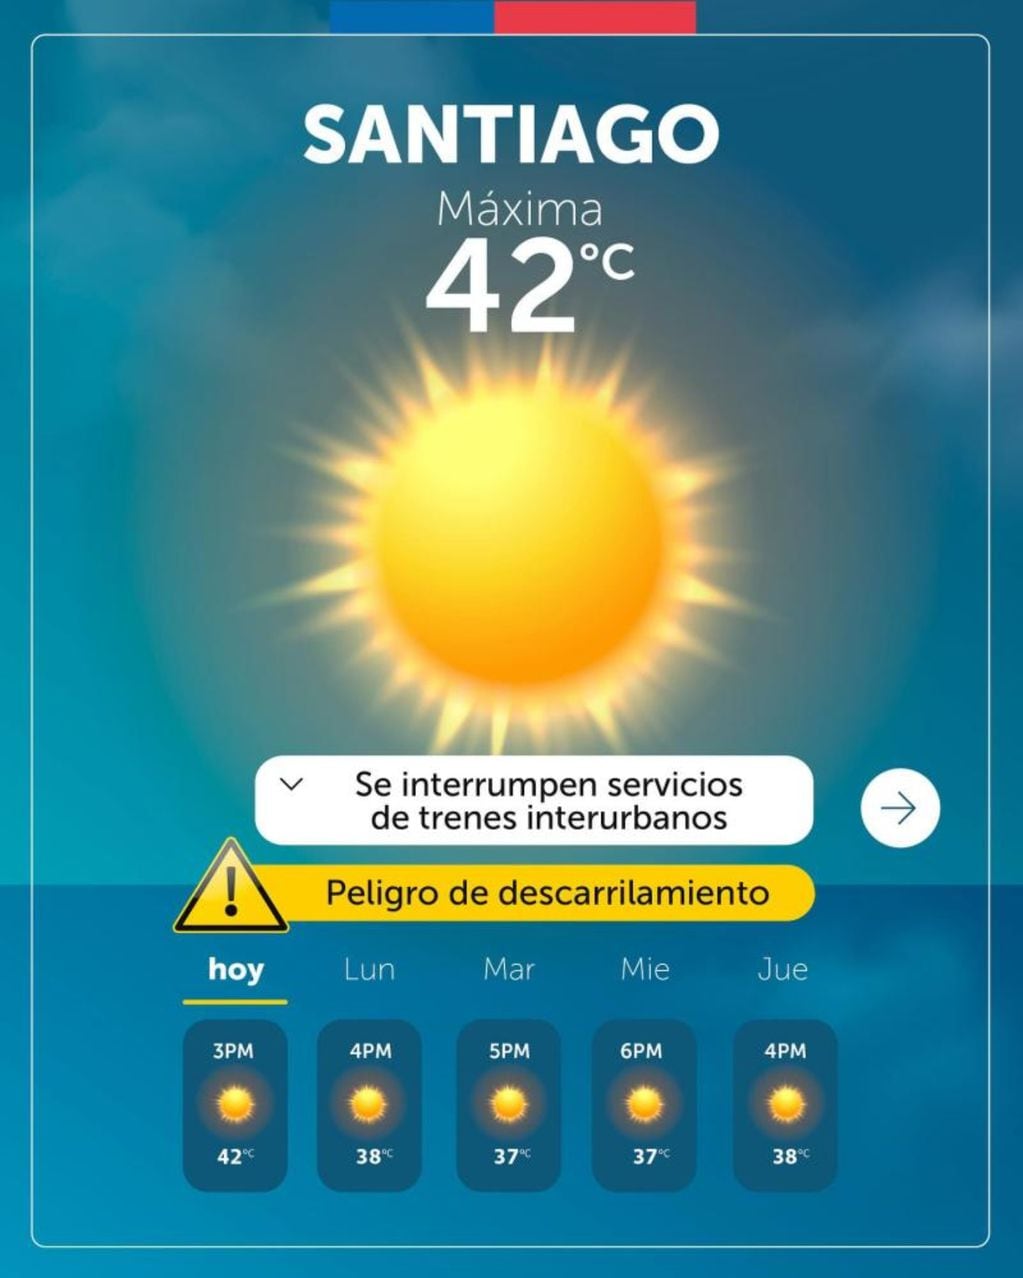  ¿42 grados en Santiago? La fallida advertencia del Gobierno que borraron rápidamente